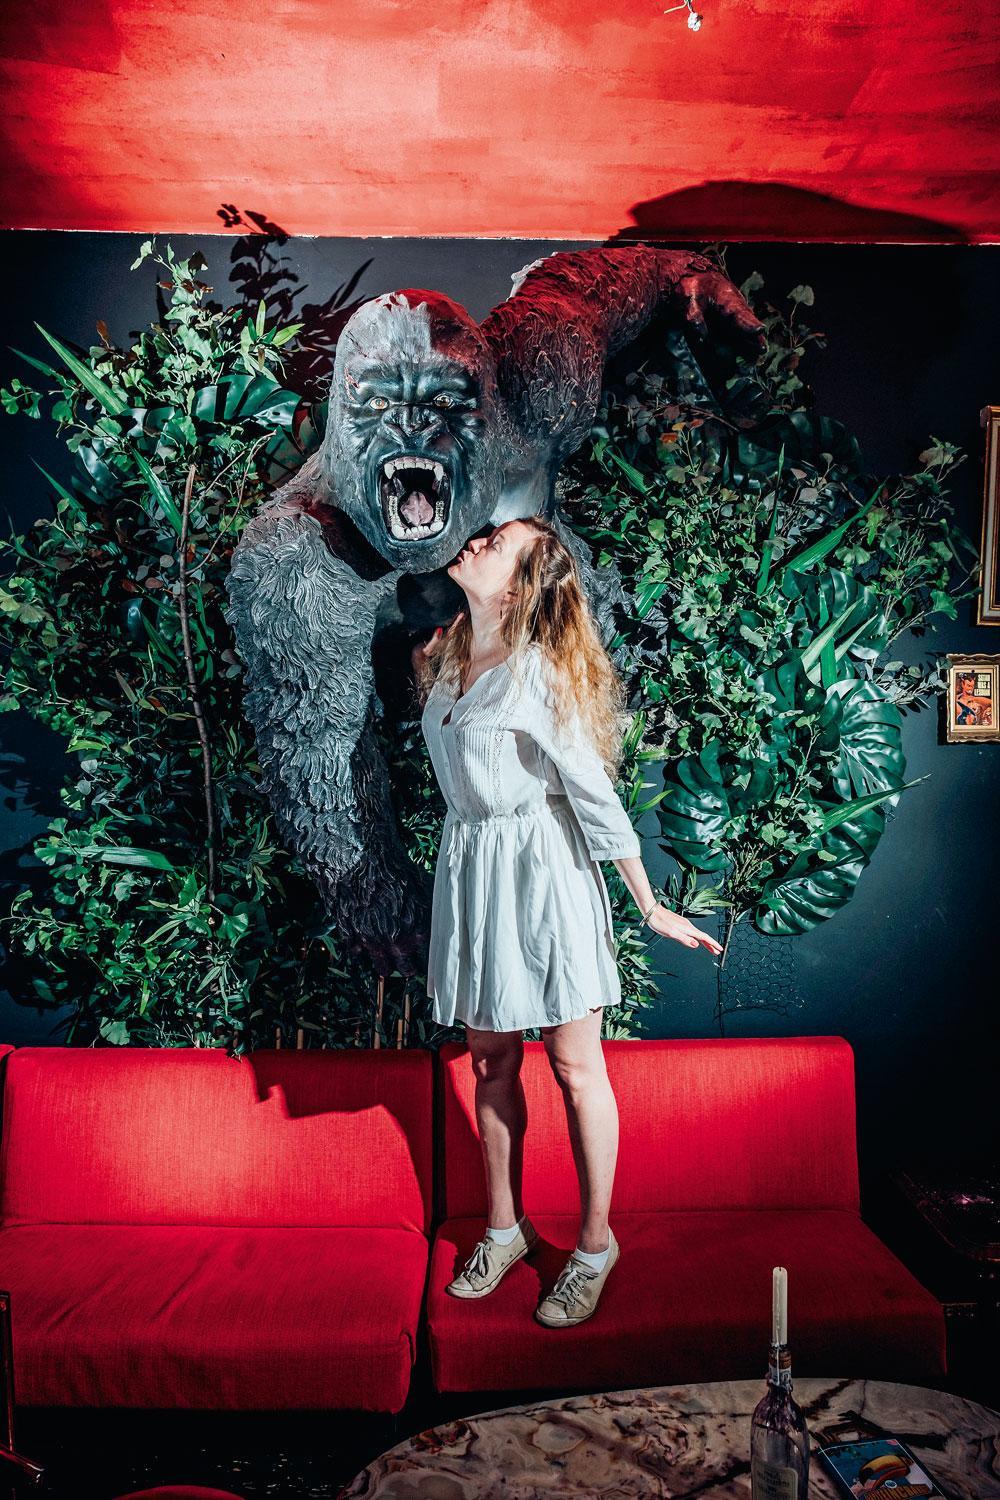 Julie Mahieu kust King Kong in haar favoriet Gents café Kapitein Cravate.